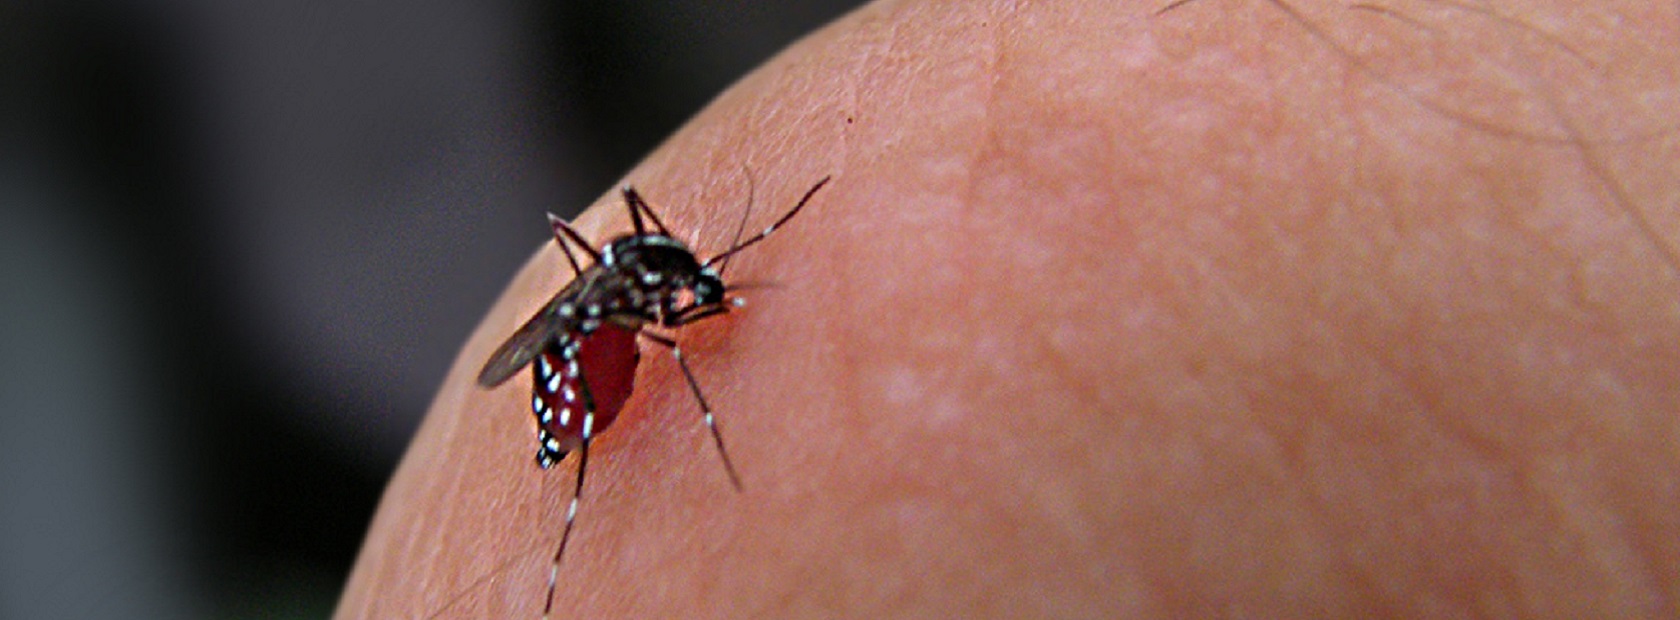 Je bekijkt nu Dengue, ook wel knokkelkoorts, wat is het?